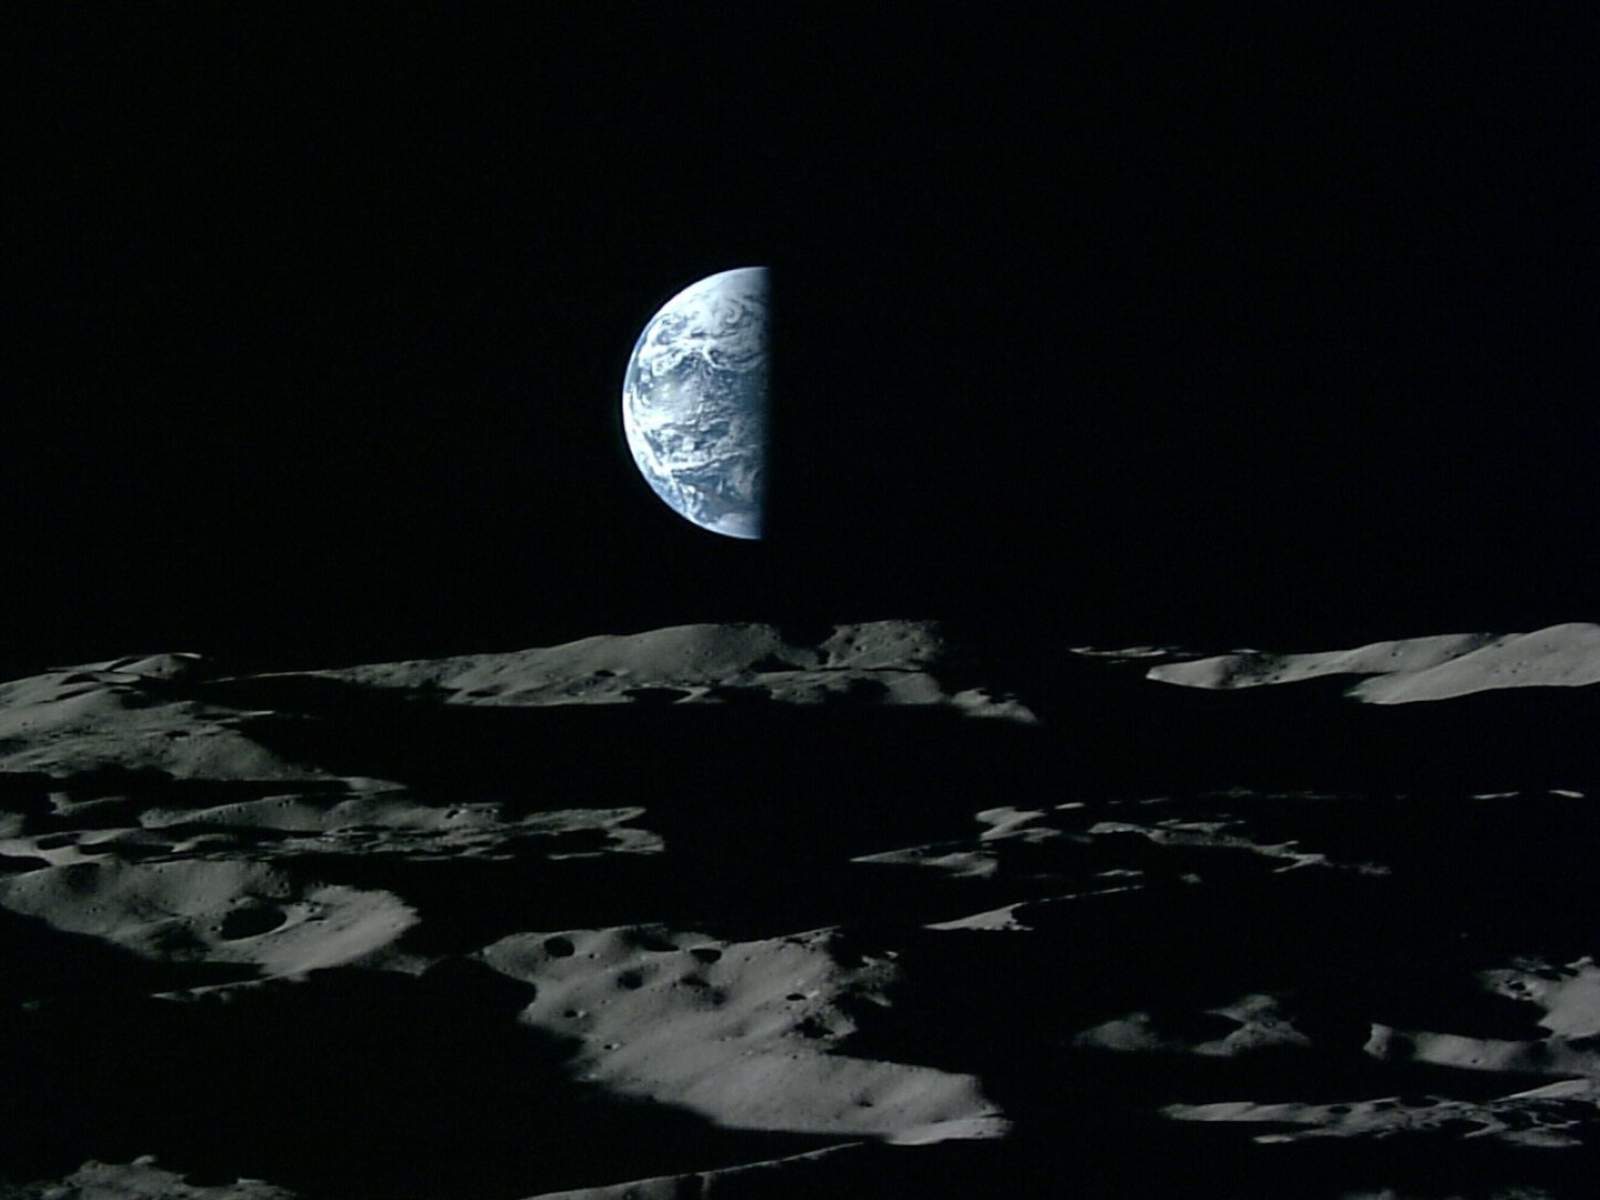 Mond und Erde fotografiert von japanischen Sonde Kaguya in 2007 Bild JAXANHK